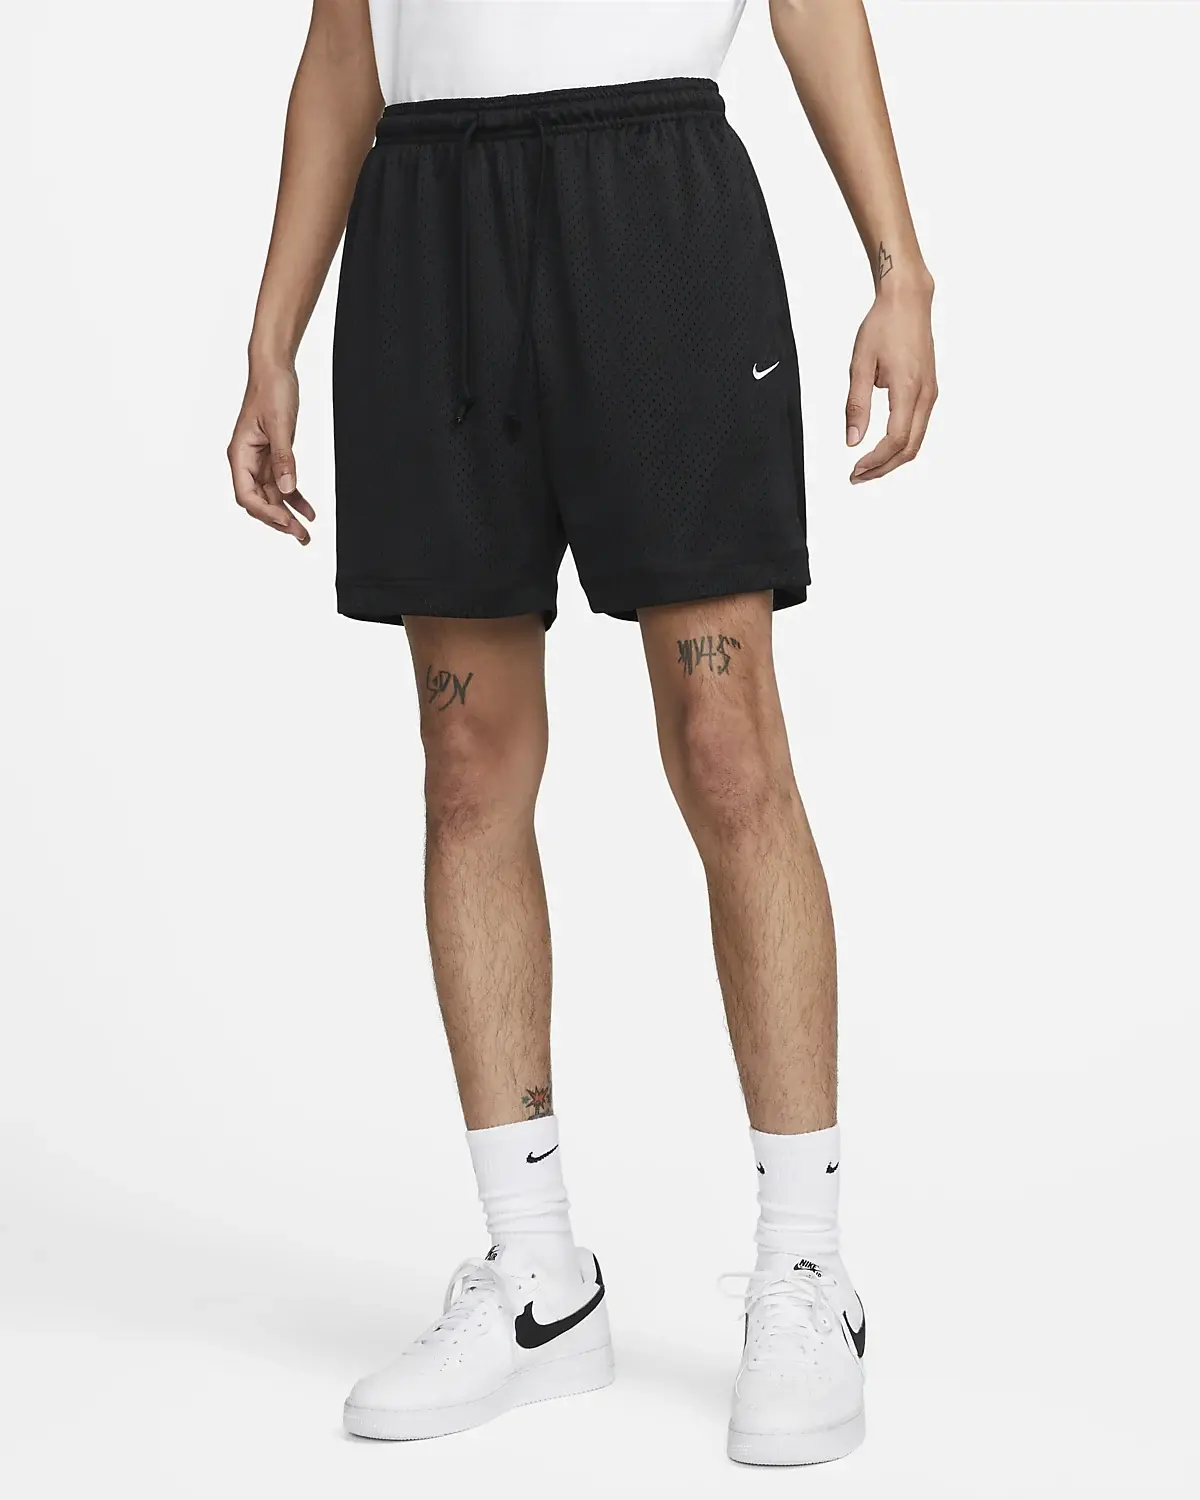 Nike Sportswear Authentics. 1